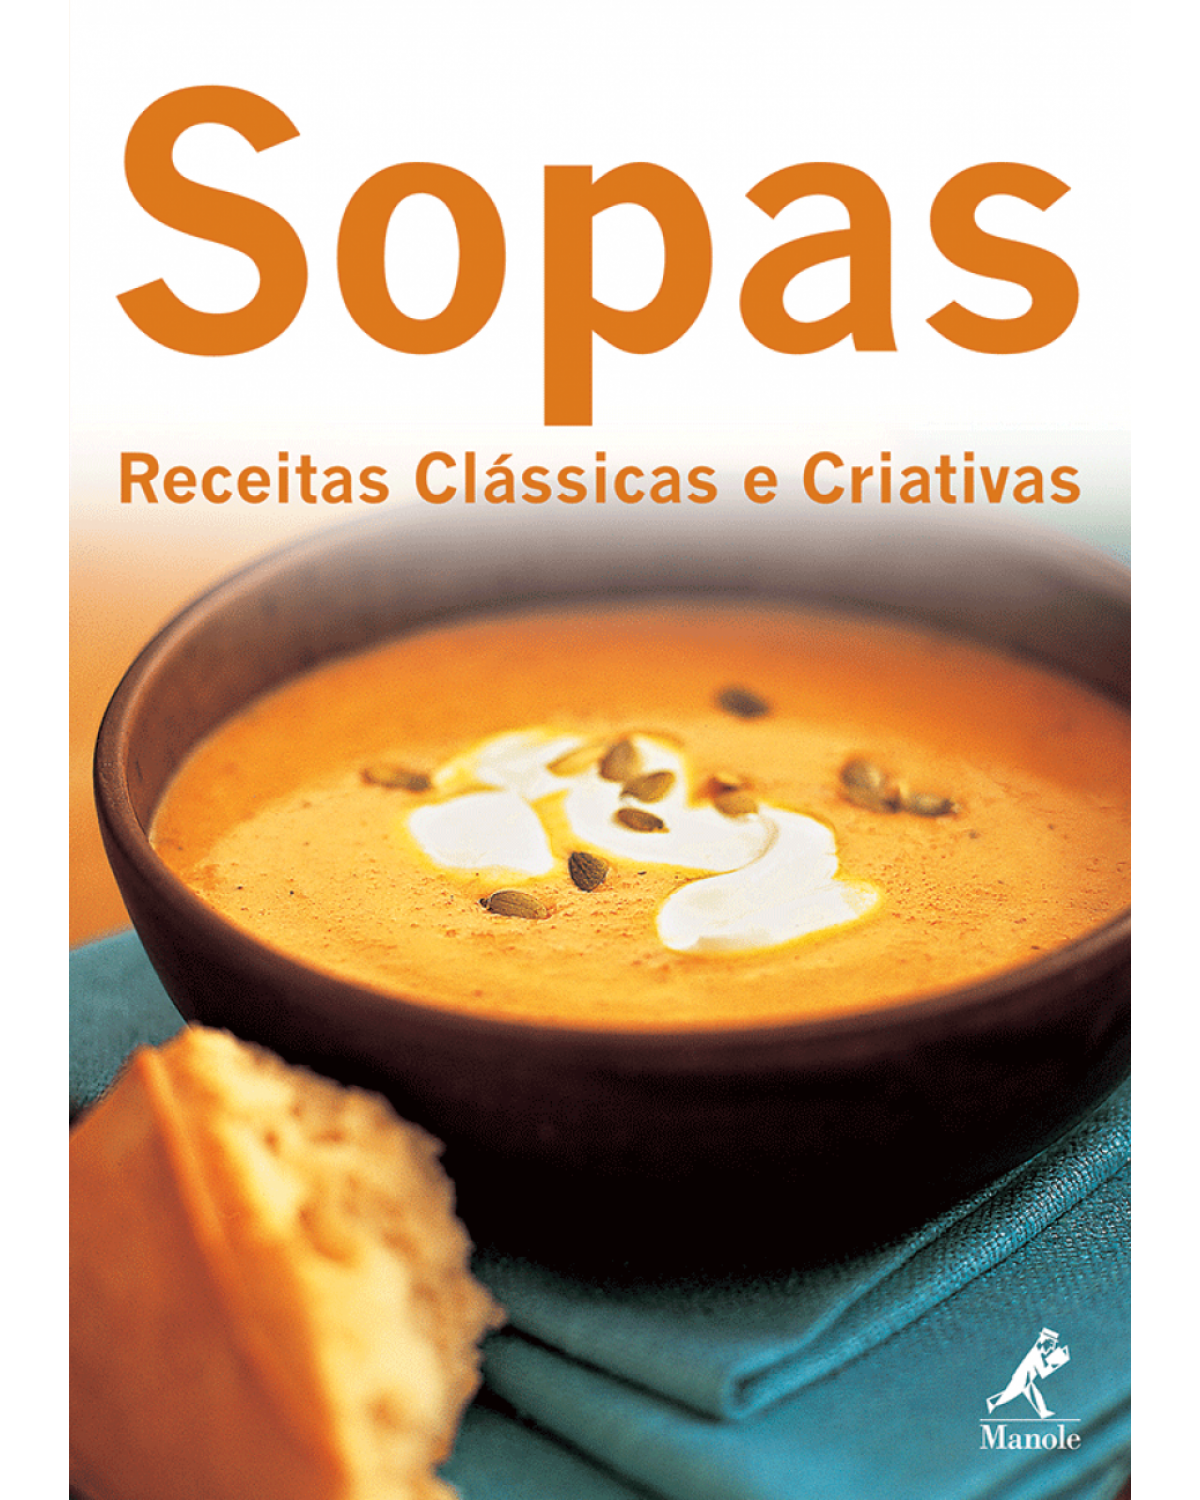 Sopas - Receitas clássicas e criativas - 1ª Edição | 2011